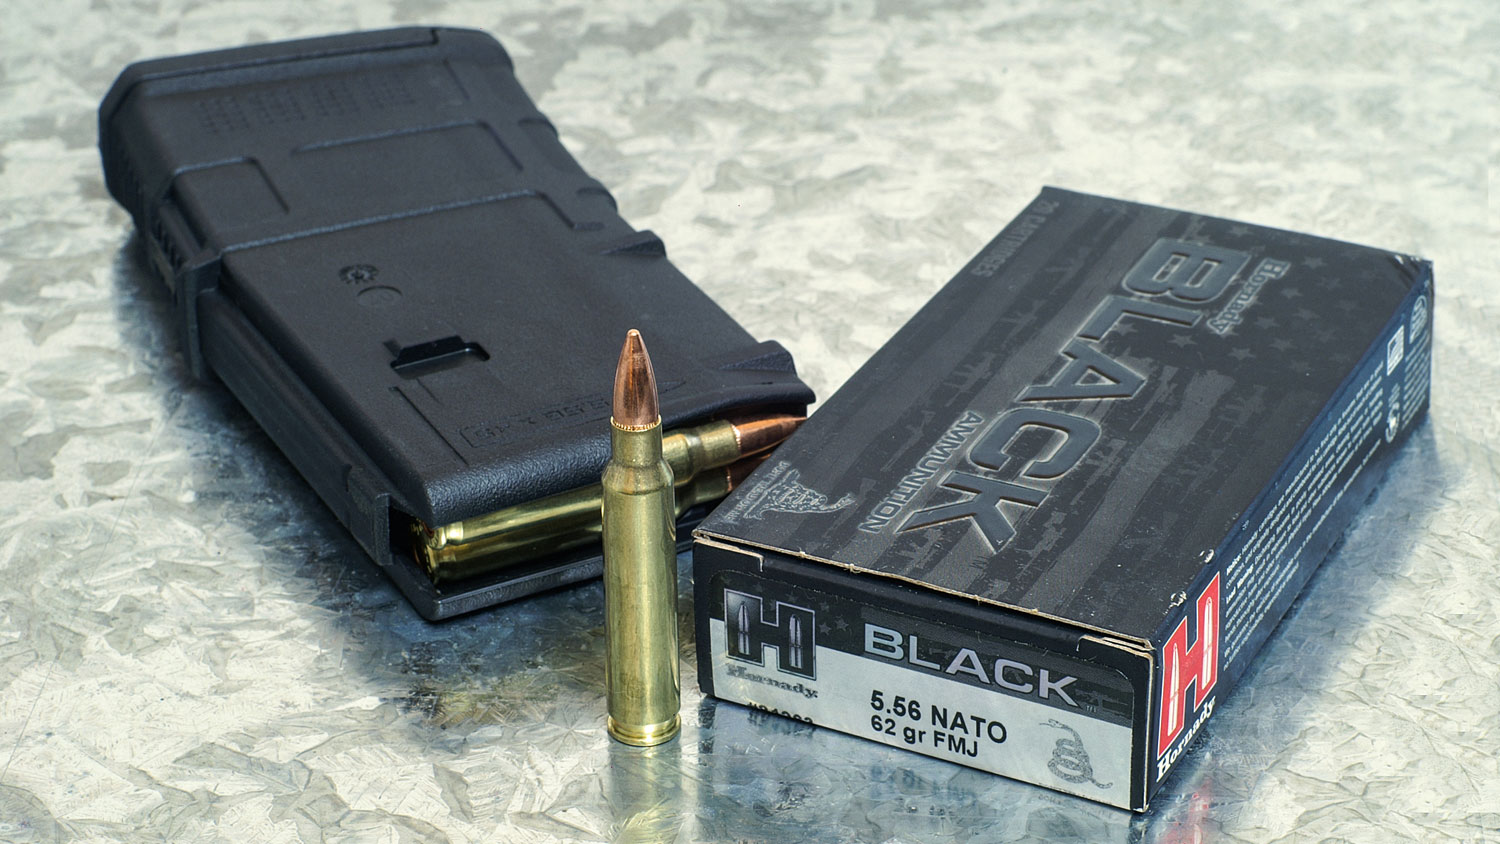 Hornady Black 5.56 NATO 62-grain FMJ. (Glen Zediker)